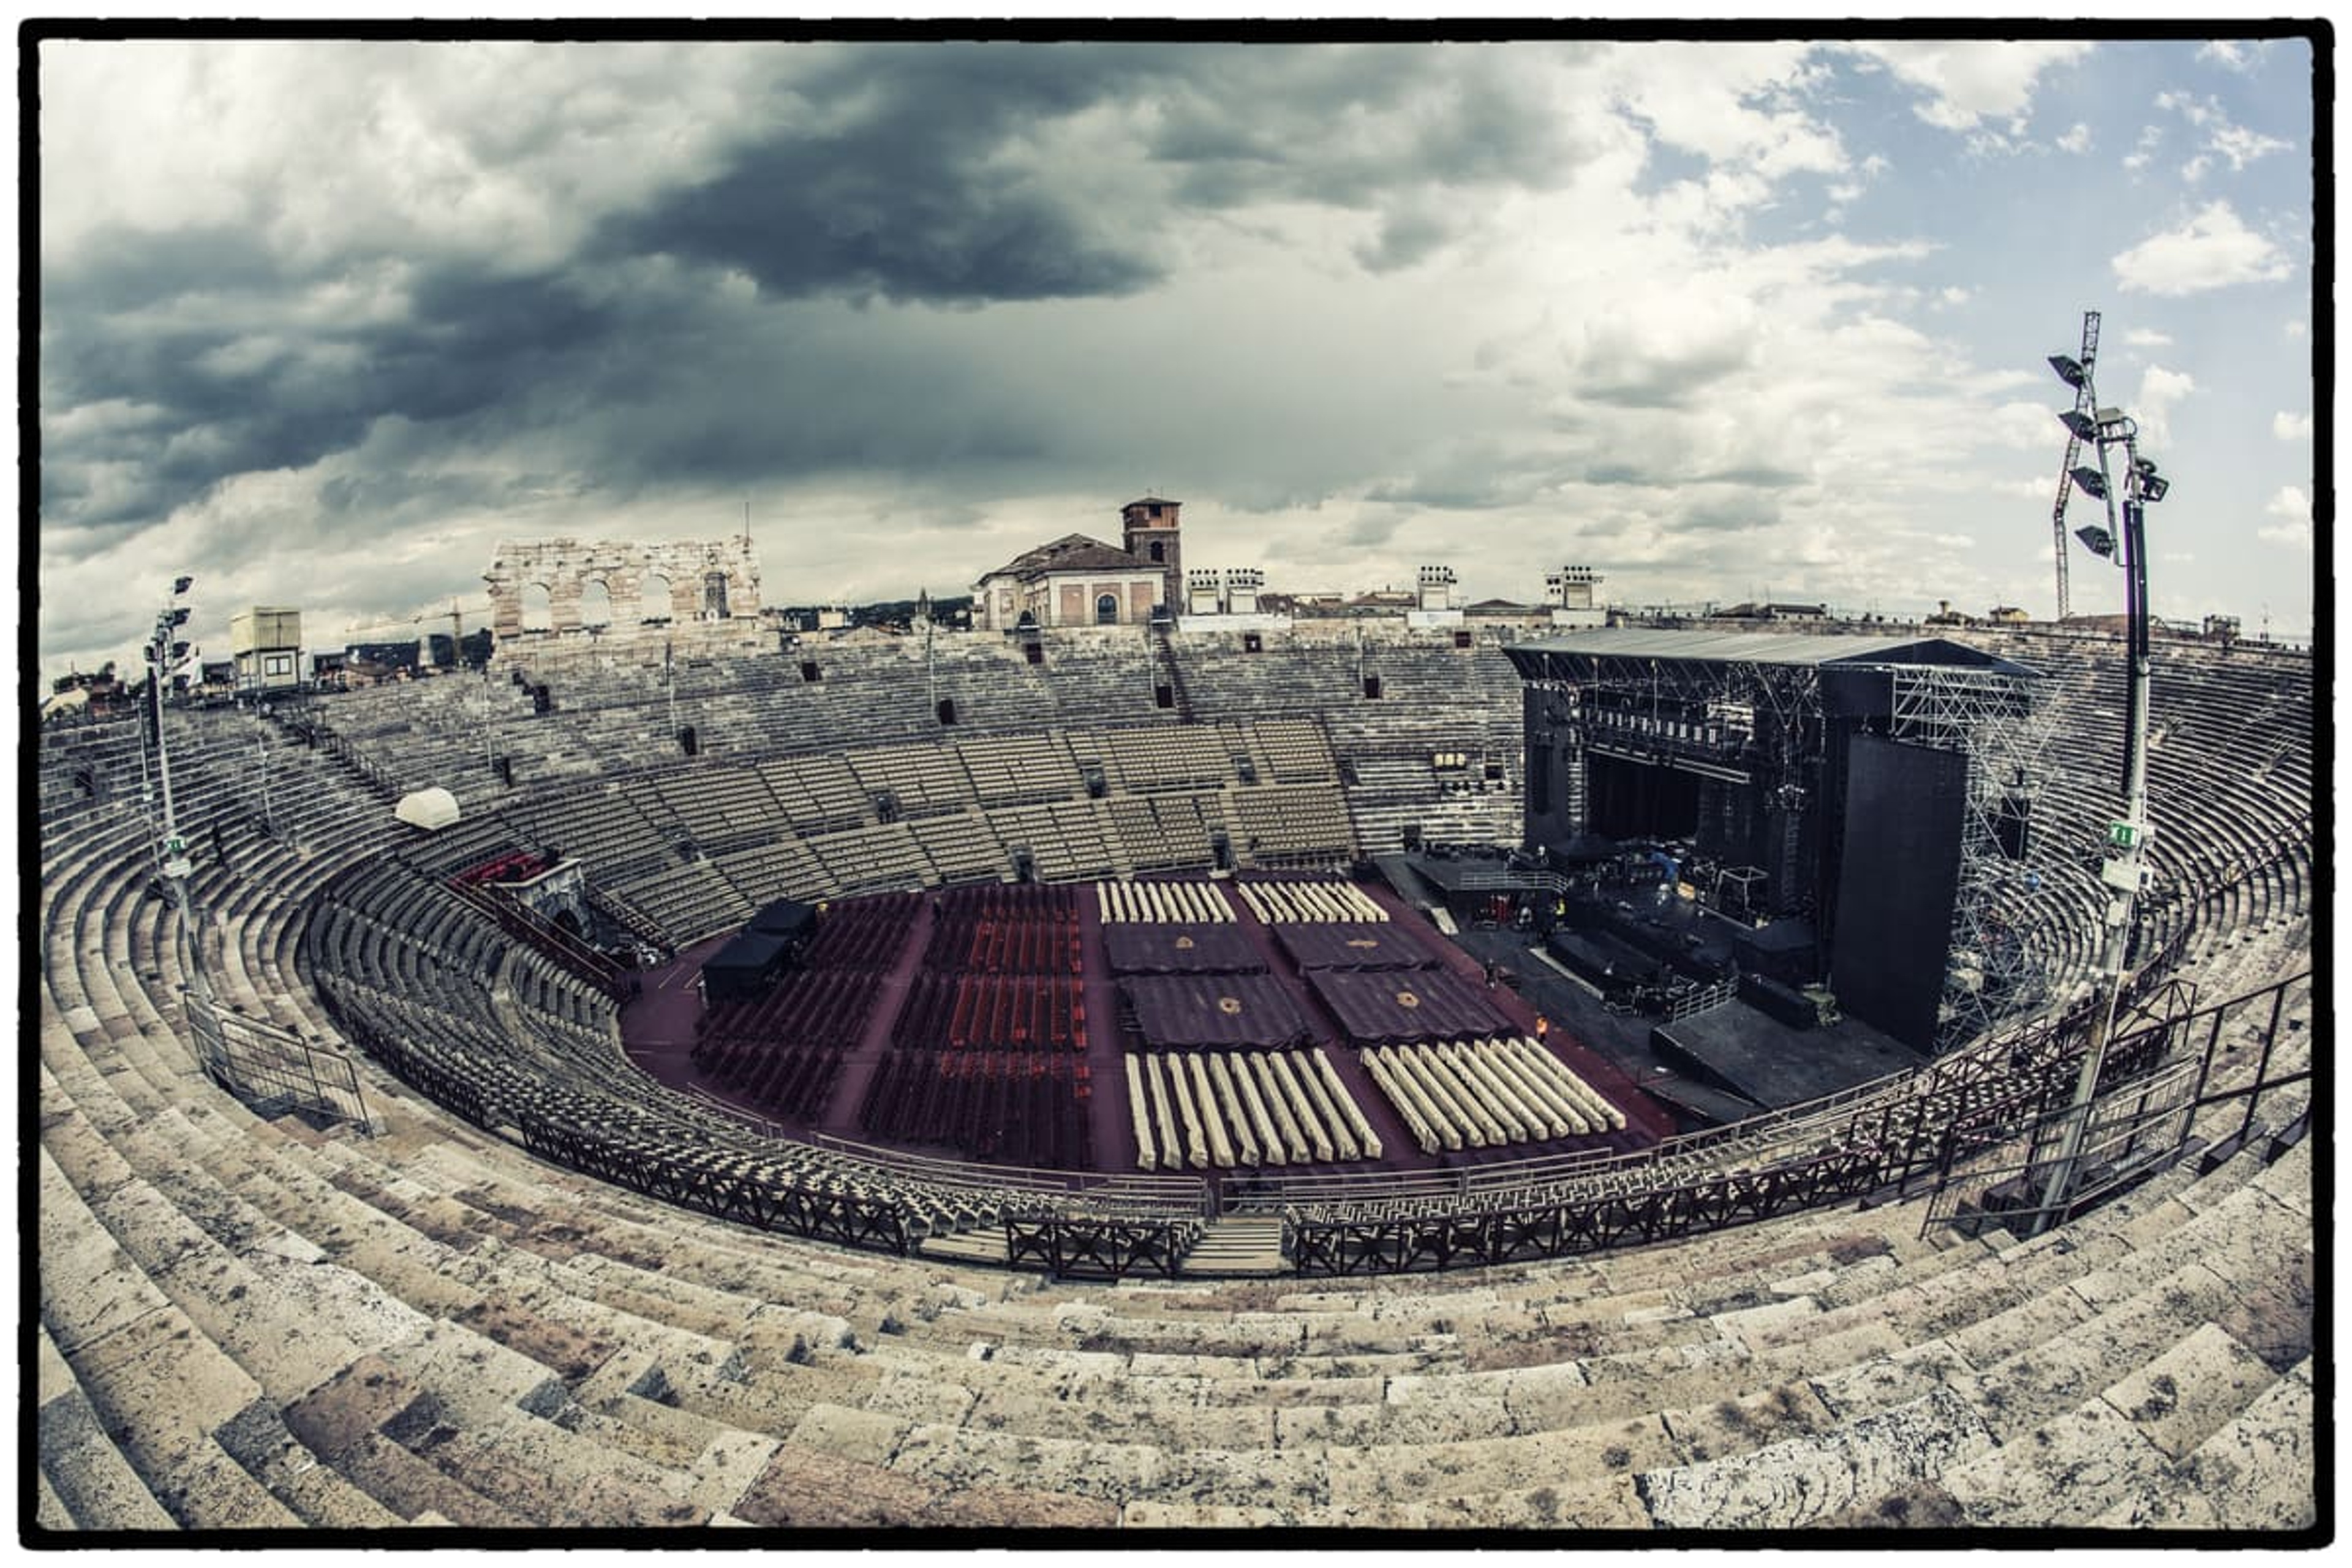 The Roman Amphitheatre, Verona, June 25th 2013